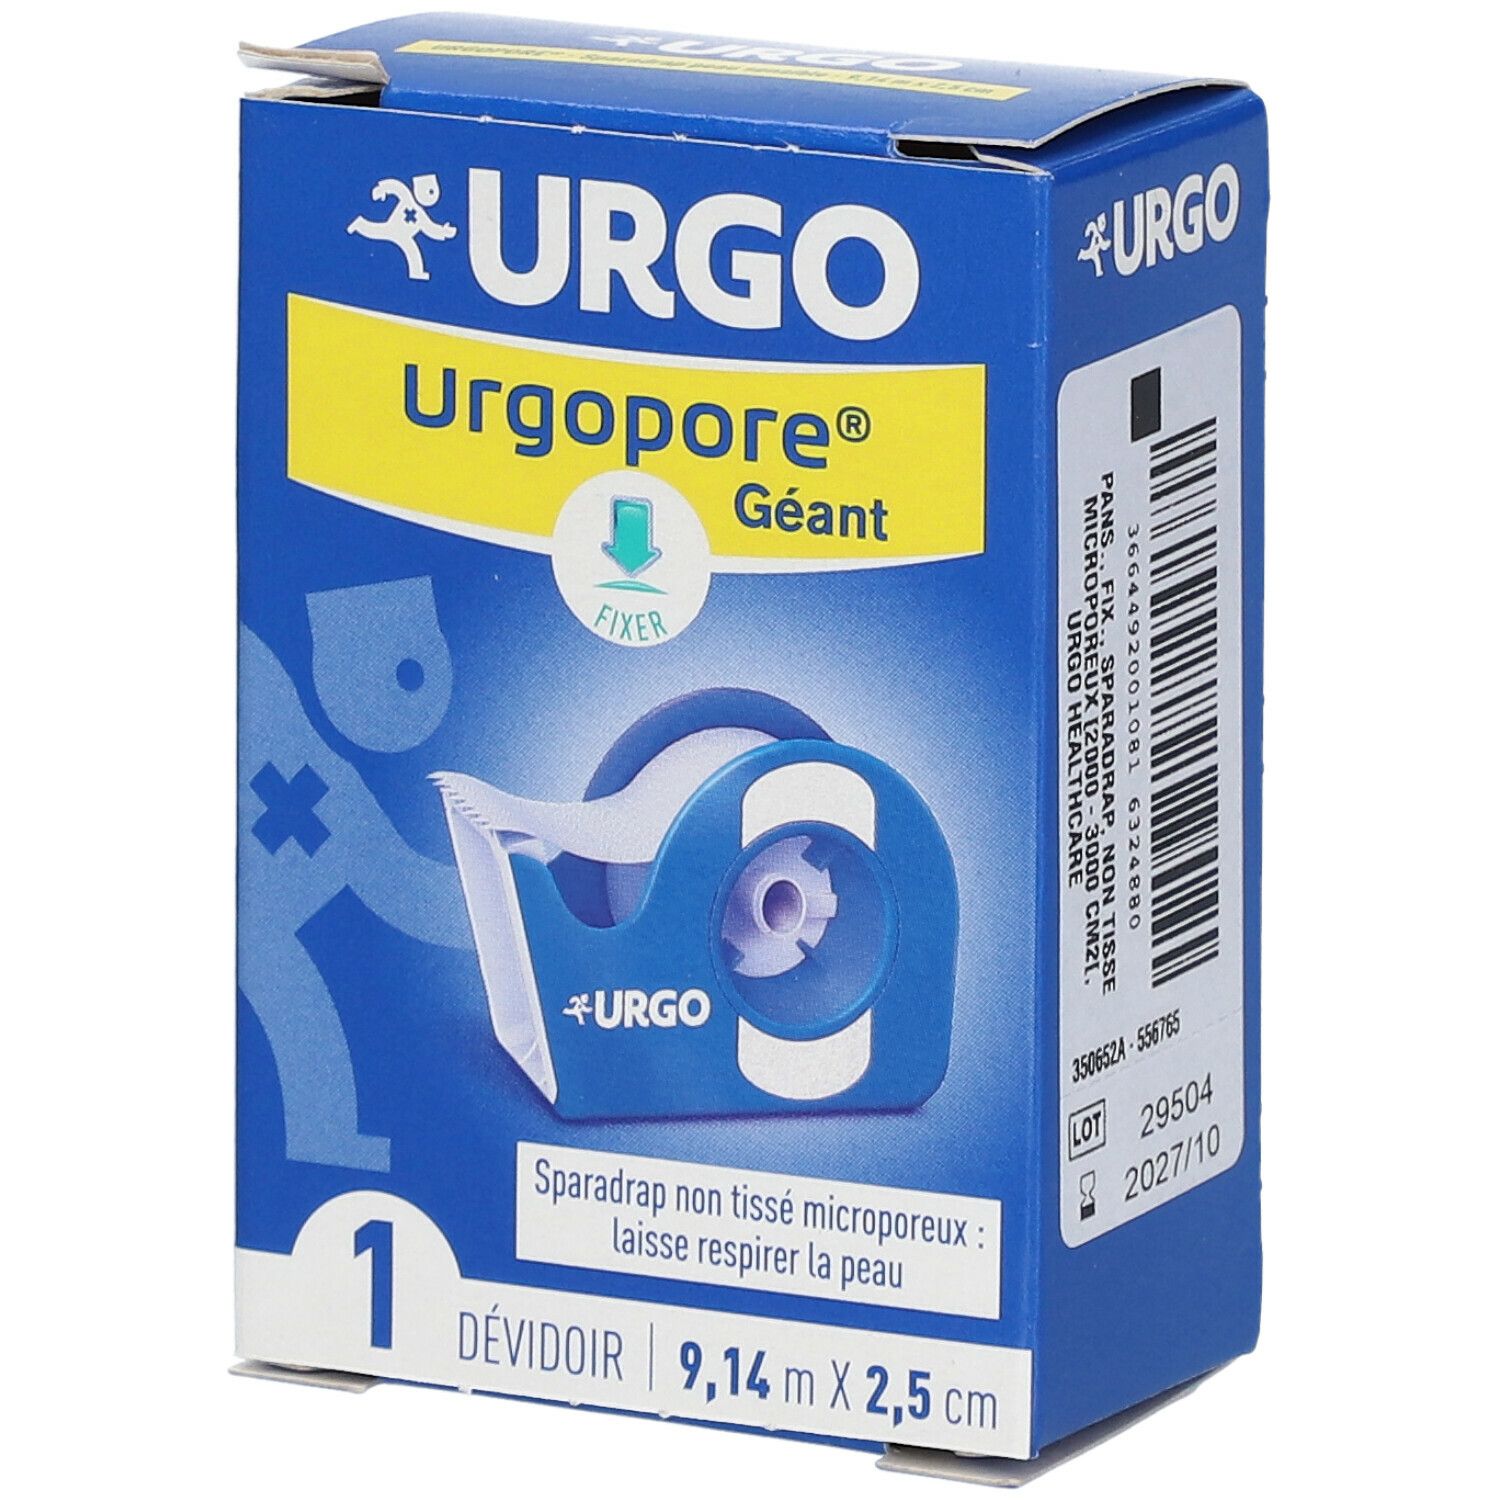 Urgo Urgopore® Géant Sparadrap non tissé microporeux 9,14 m x 2,5 cm